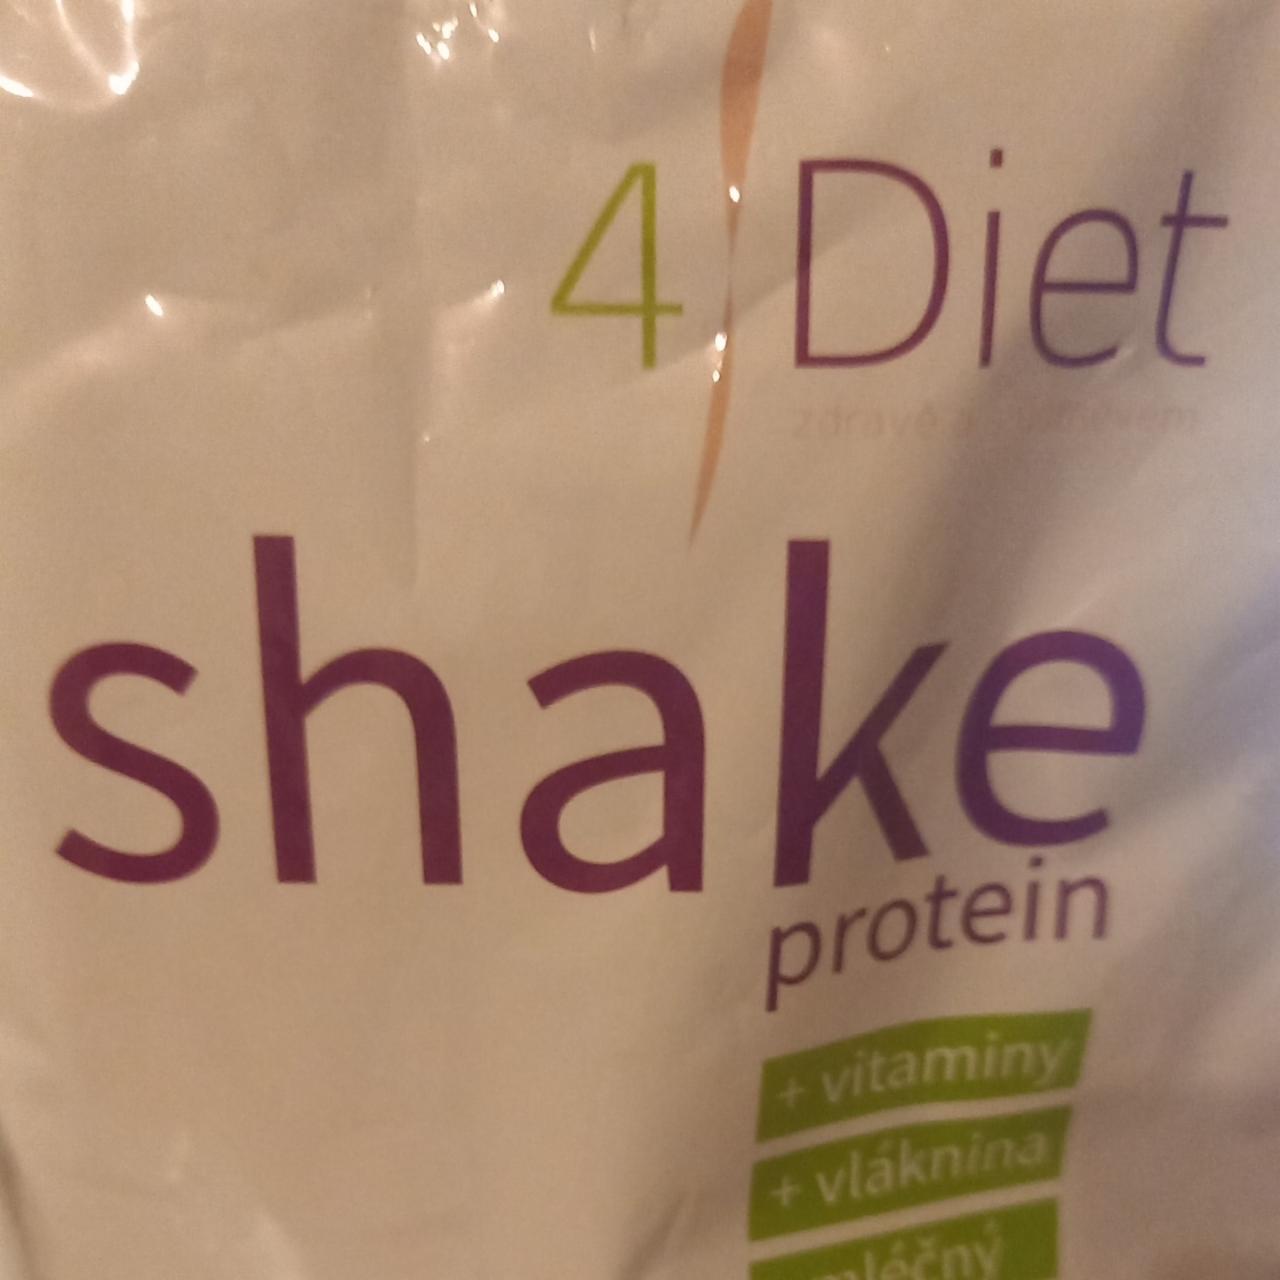 Fotografie - Shake protein Banán 4Diet